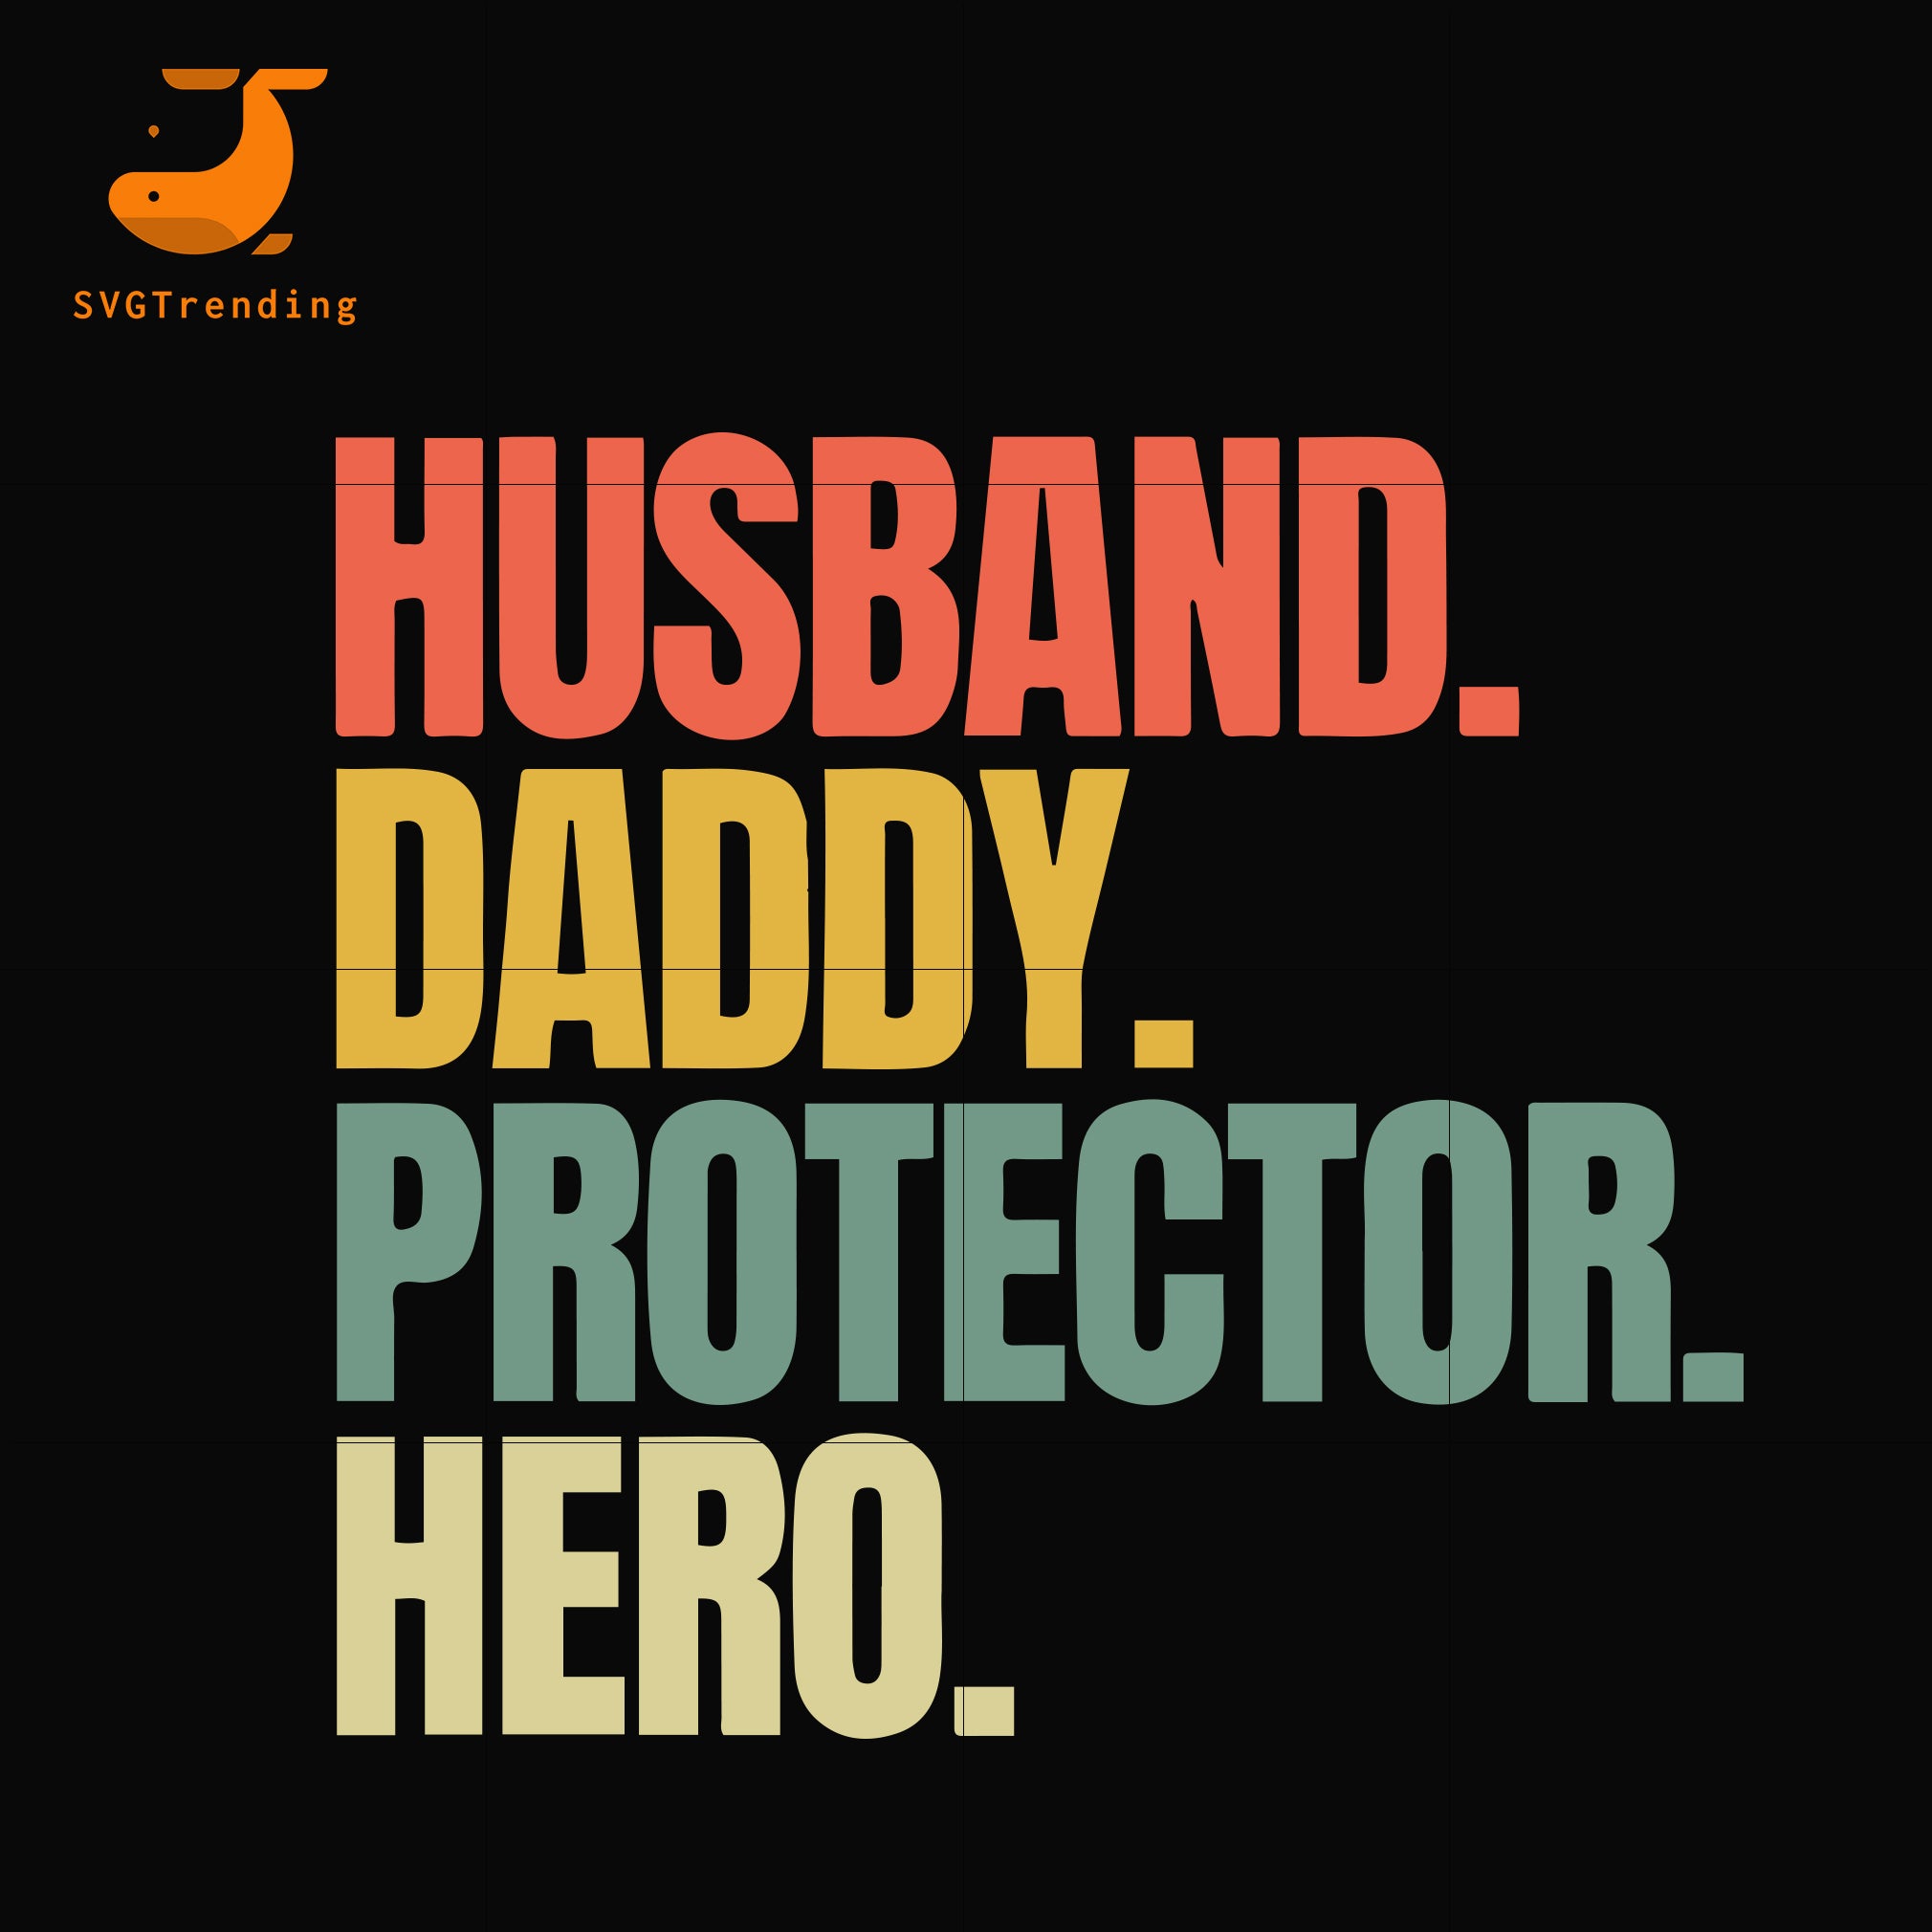 Download Husband Daddy Protector Hero Svg Png Dxf Eps Digital File Ftd11 Svgtrending